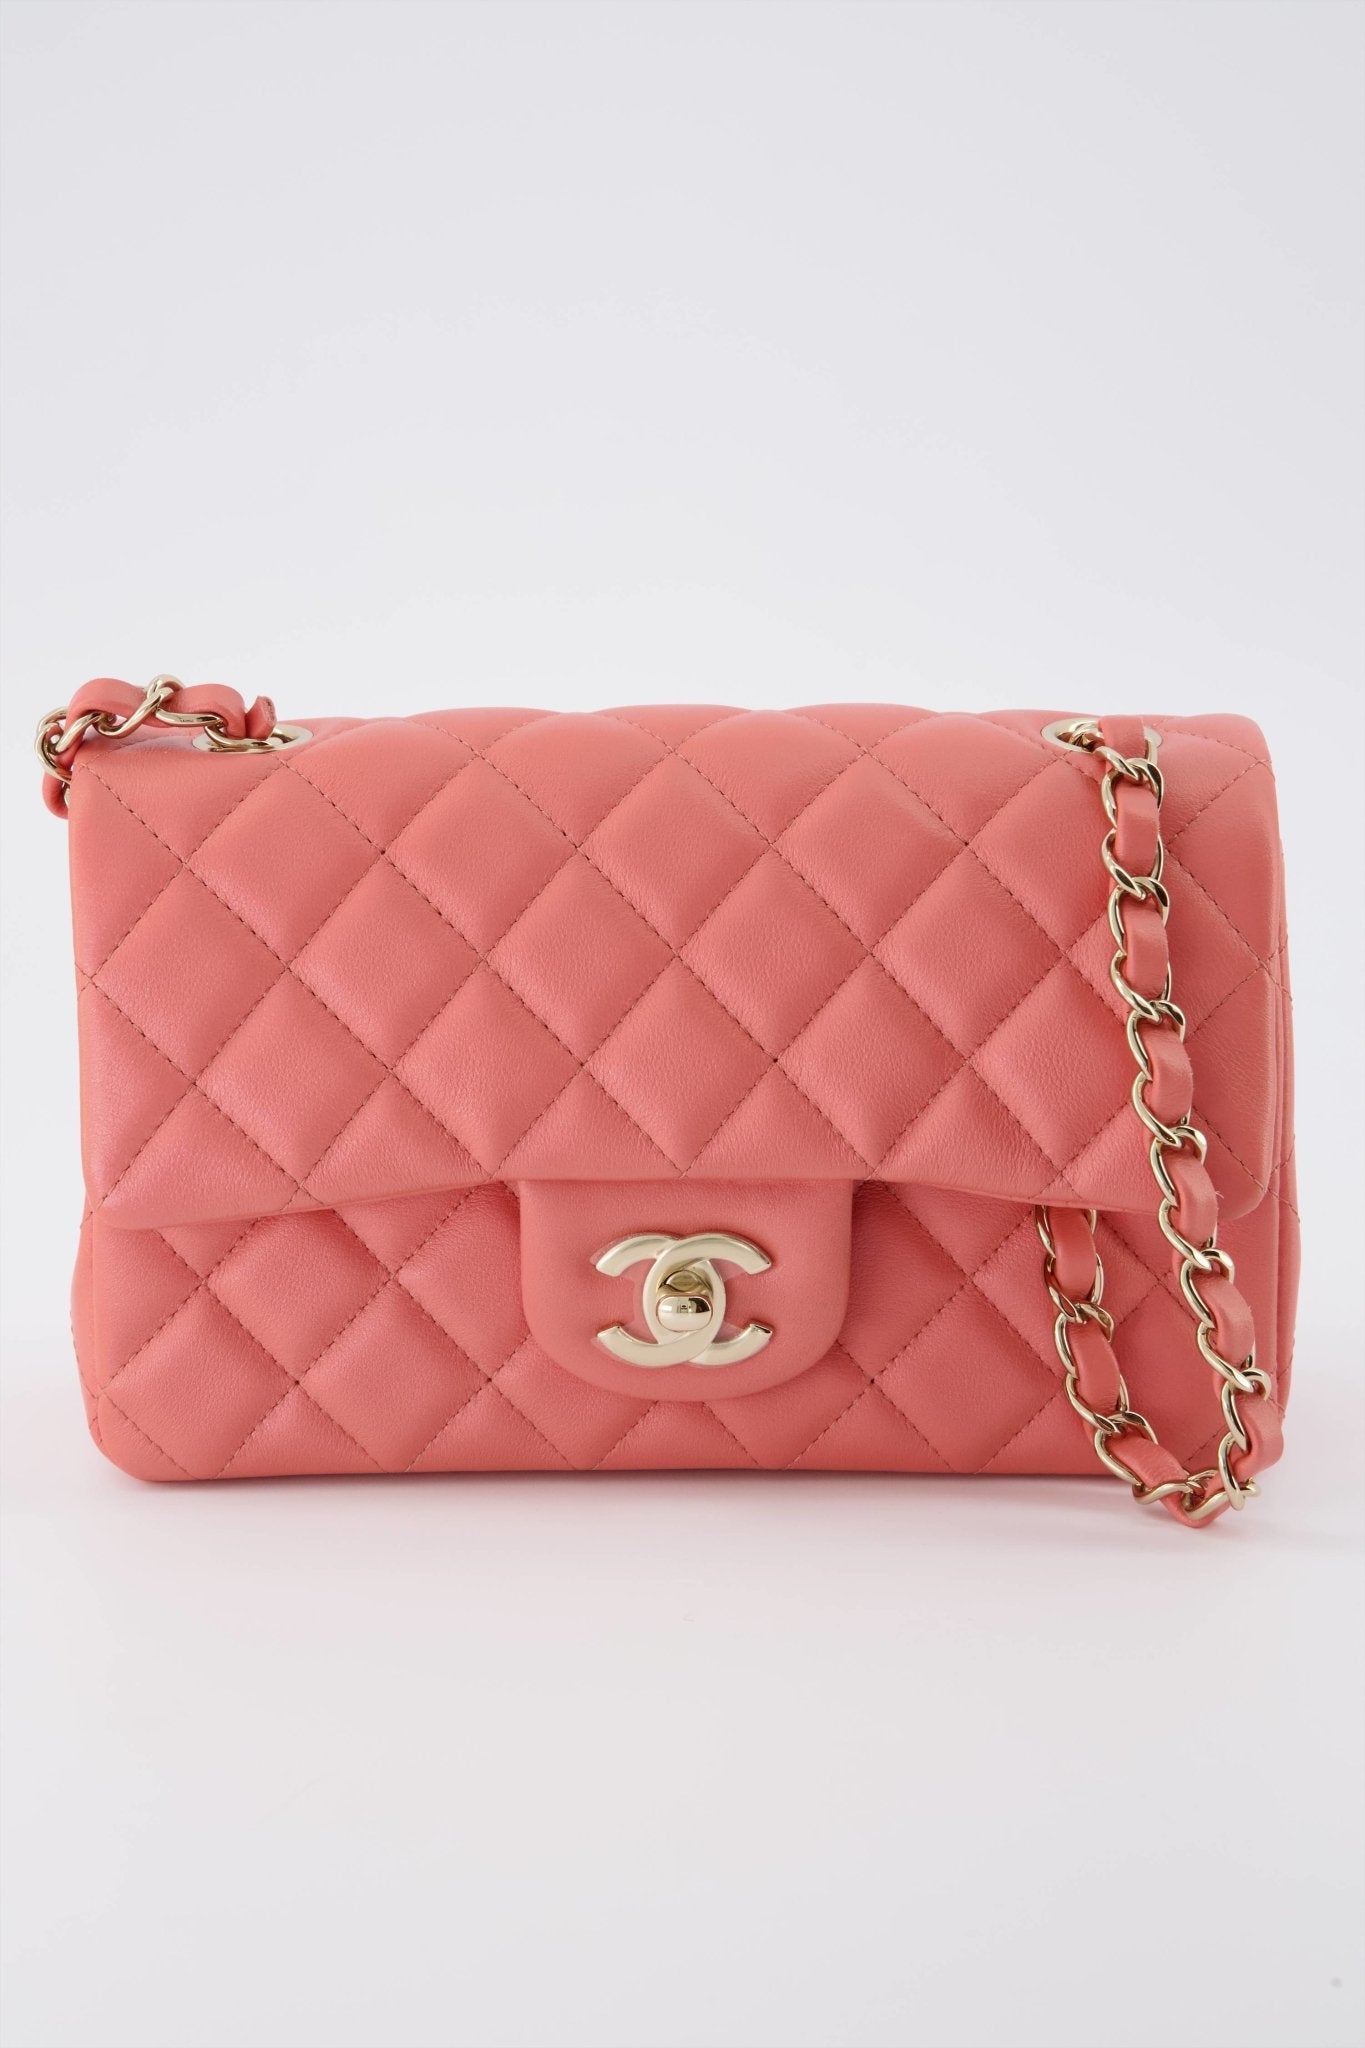 coral chanel purse